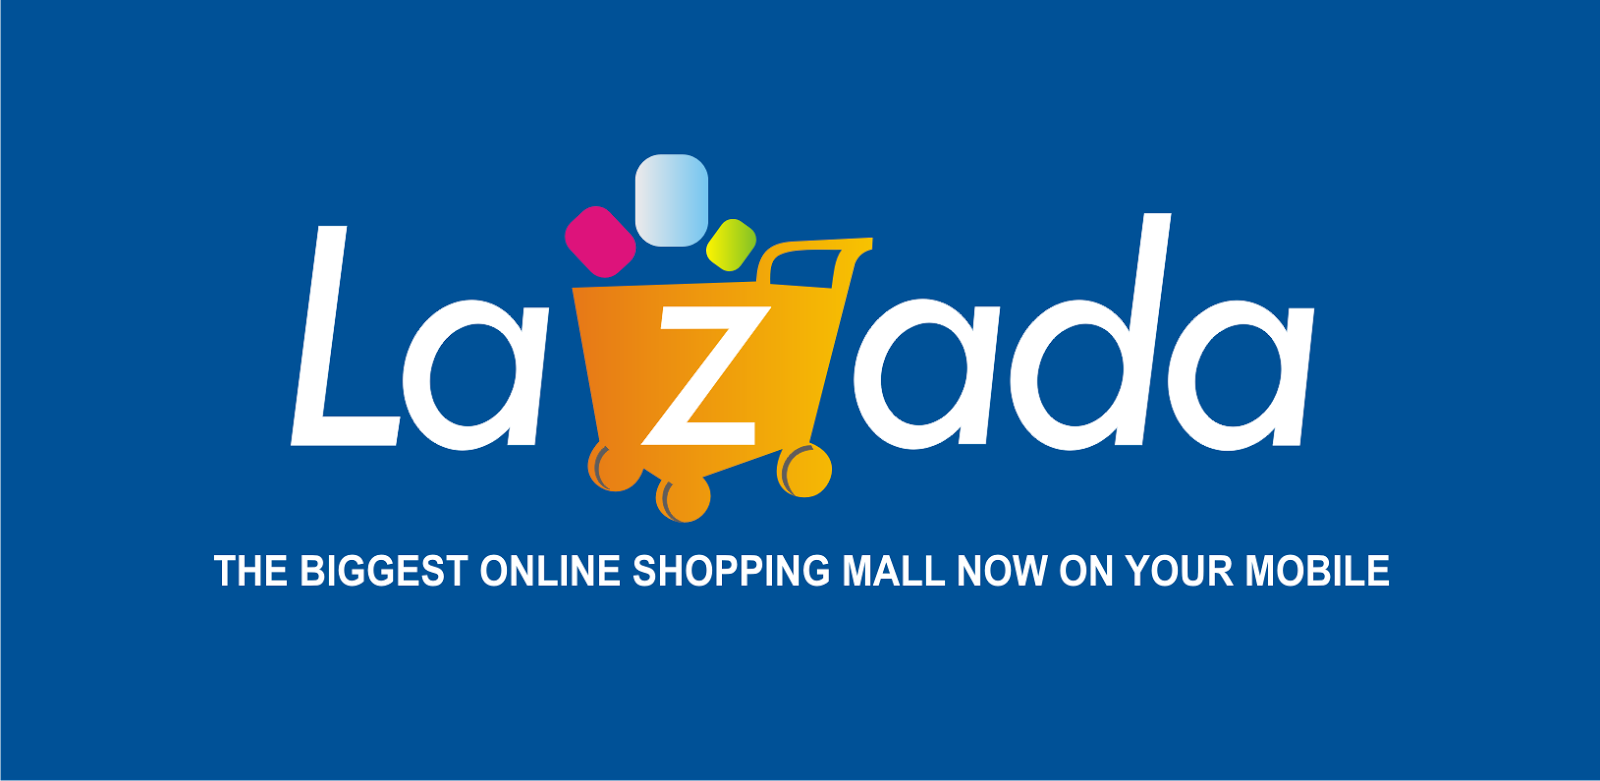 Logo Lazada  Toko Belanja Online Ardi La Madi s Blog